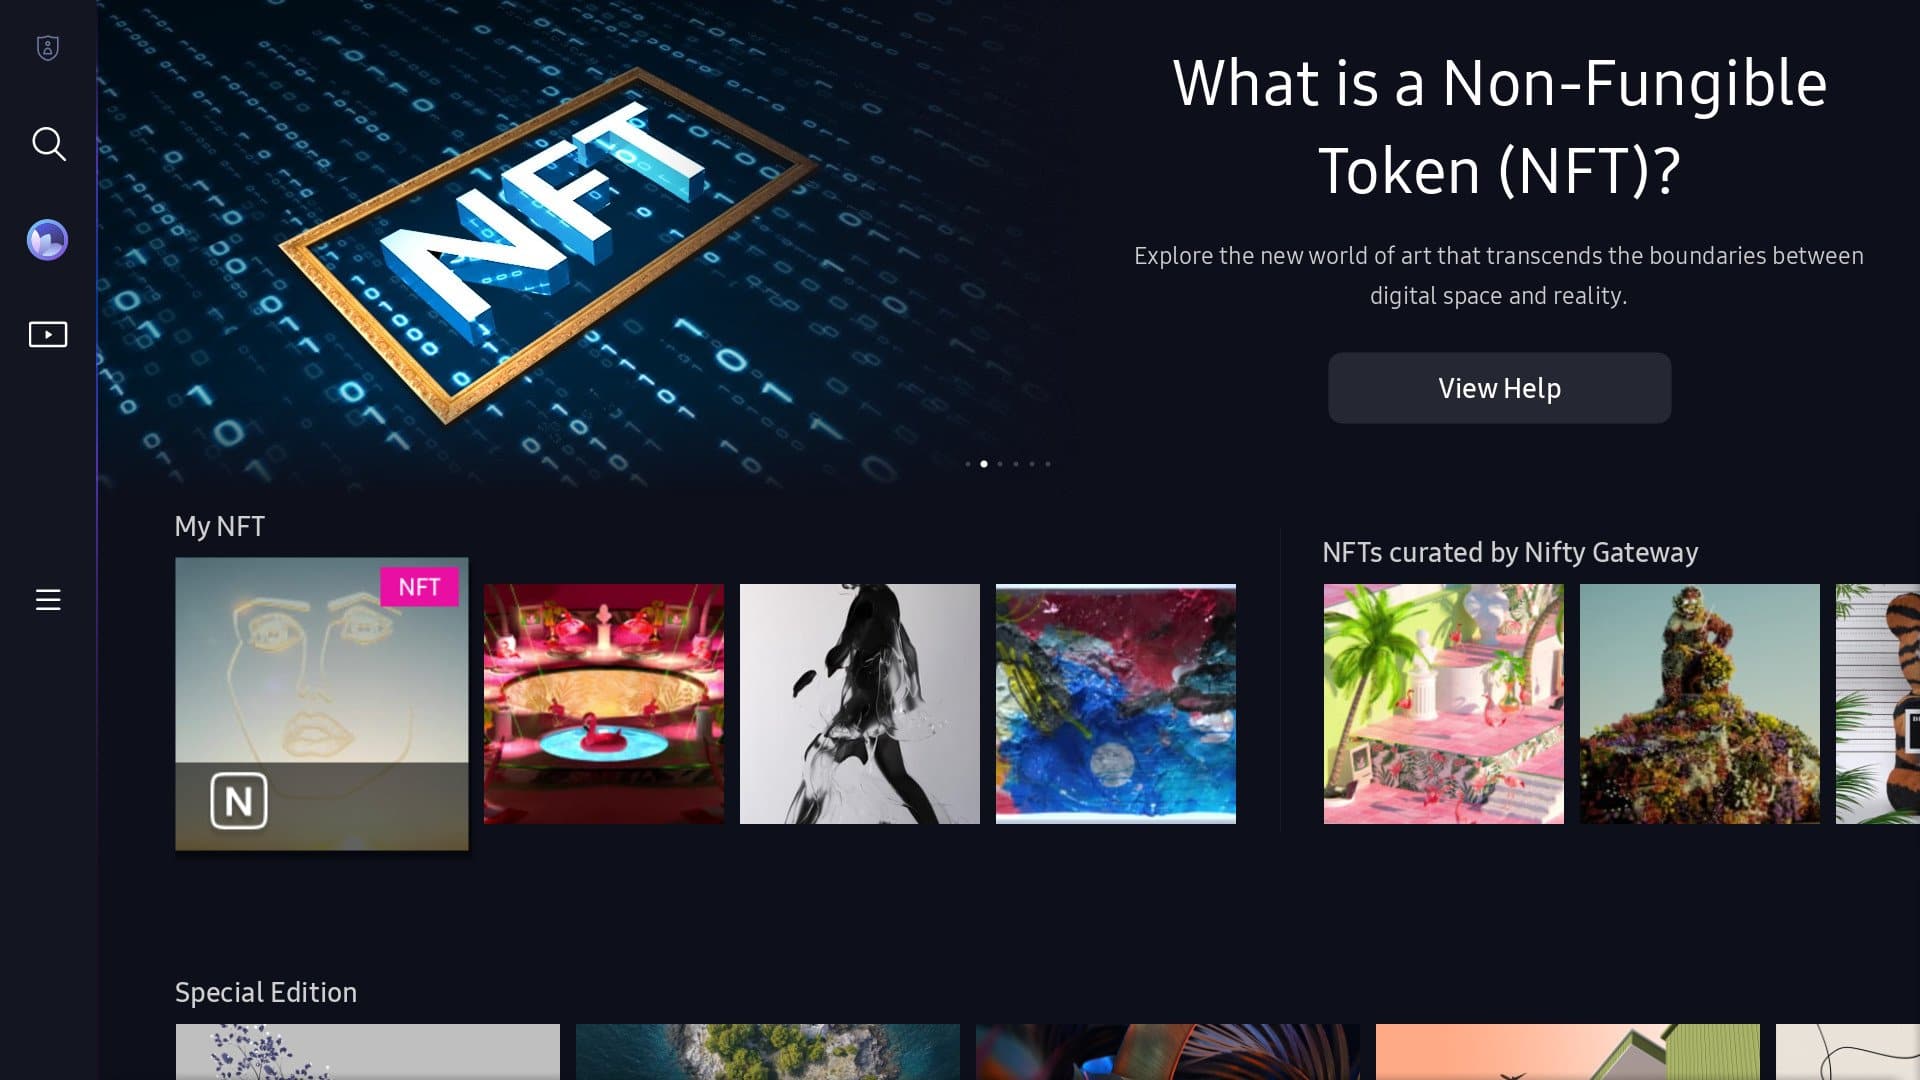 Promotion image showing Samsung's new NFT platform/marketplace